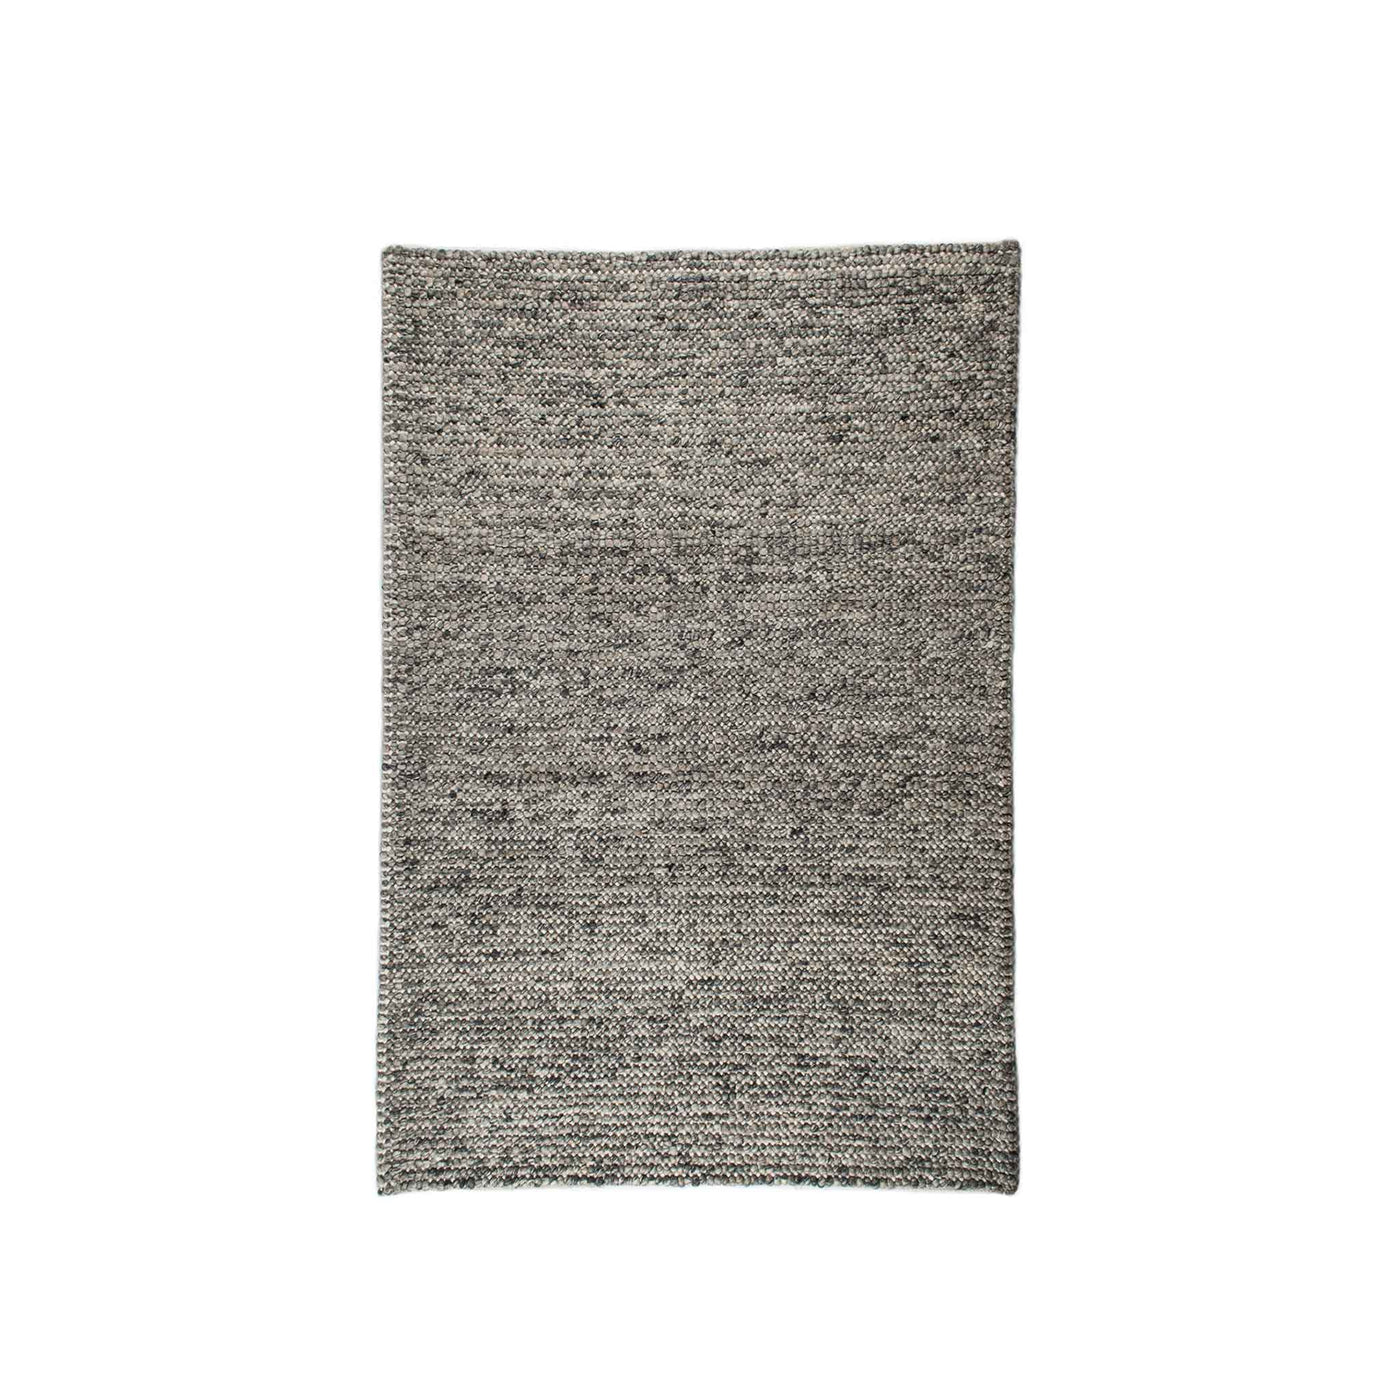 Dublin håndvævet tæppe i meleret grå fra HC Tæpprt